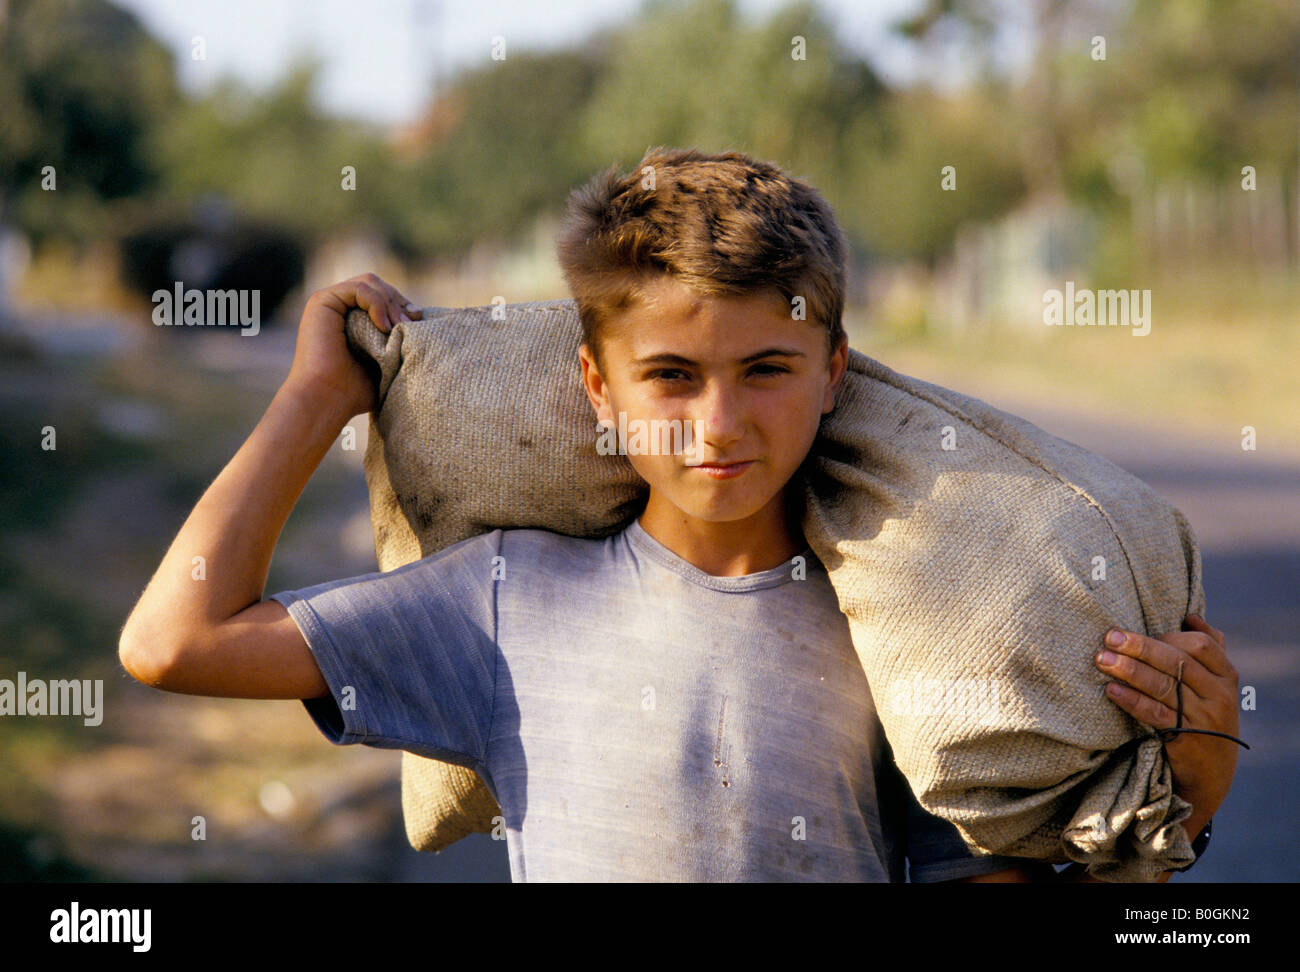 Un garçon portant un sac sur ses épaules, la Roumanie. Banque D'Images